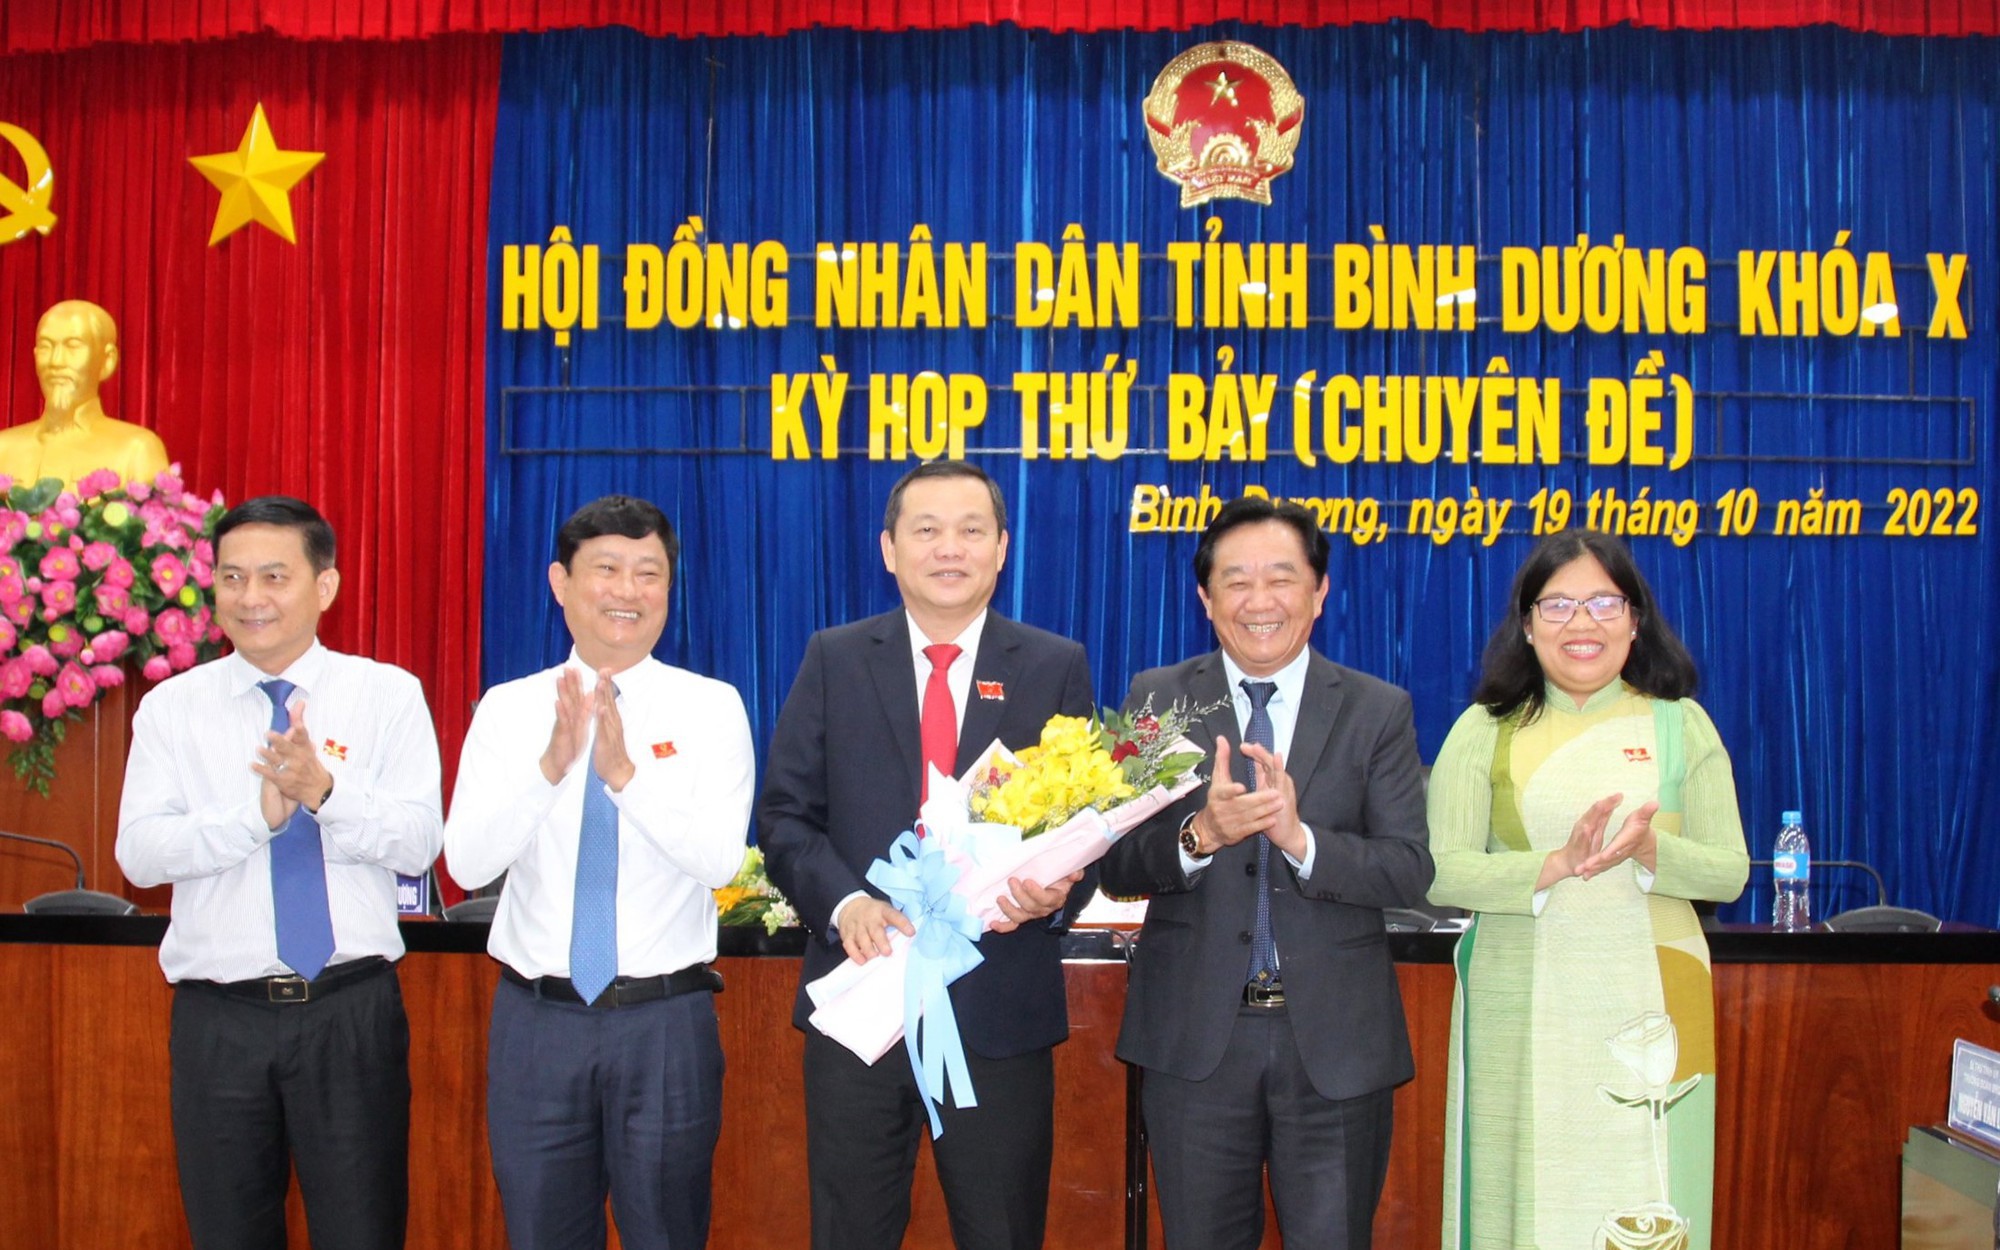 Chủ tịch HĐND tỉnh Bình Dương Phạm Văn Chánh chủ động làm đơn xin thôi nhiệm vụ vì lý do sức khỏe